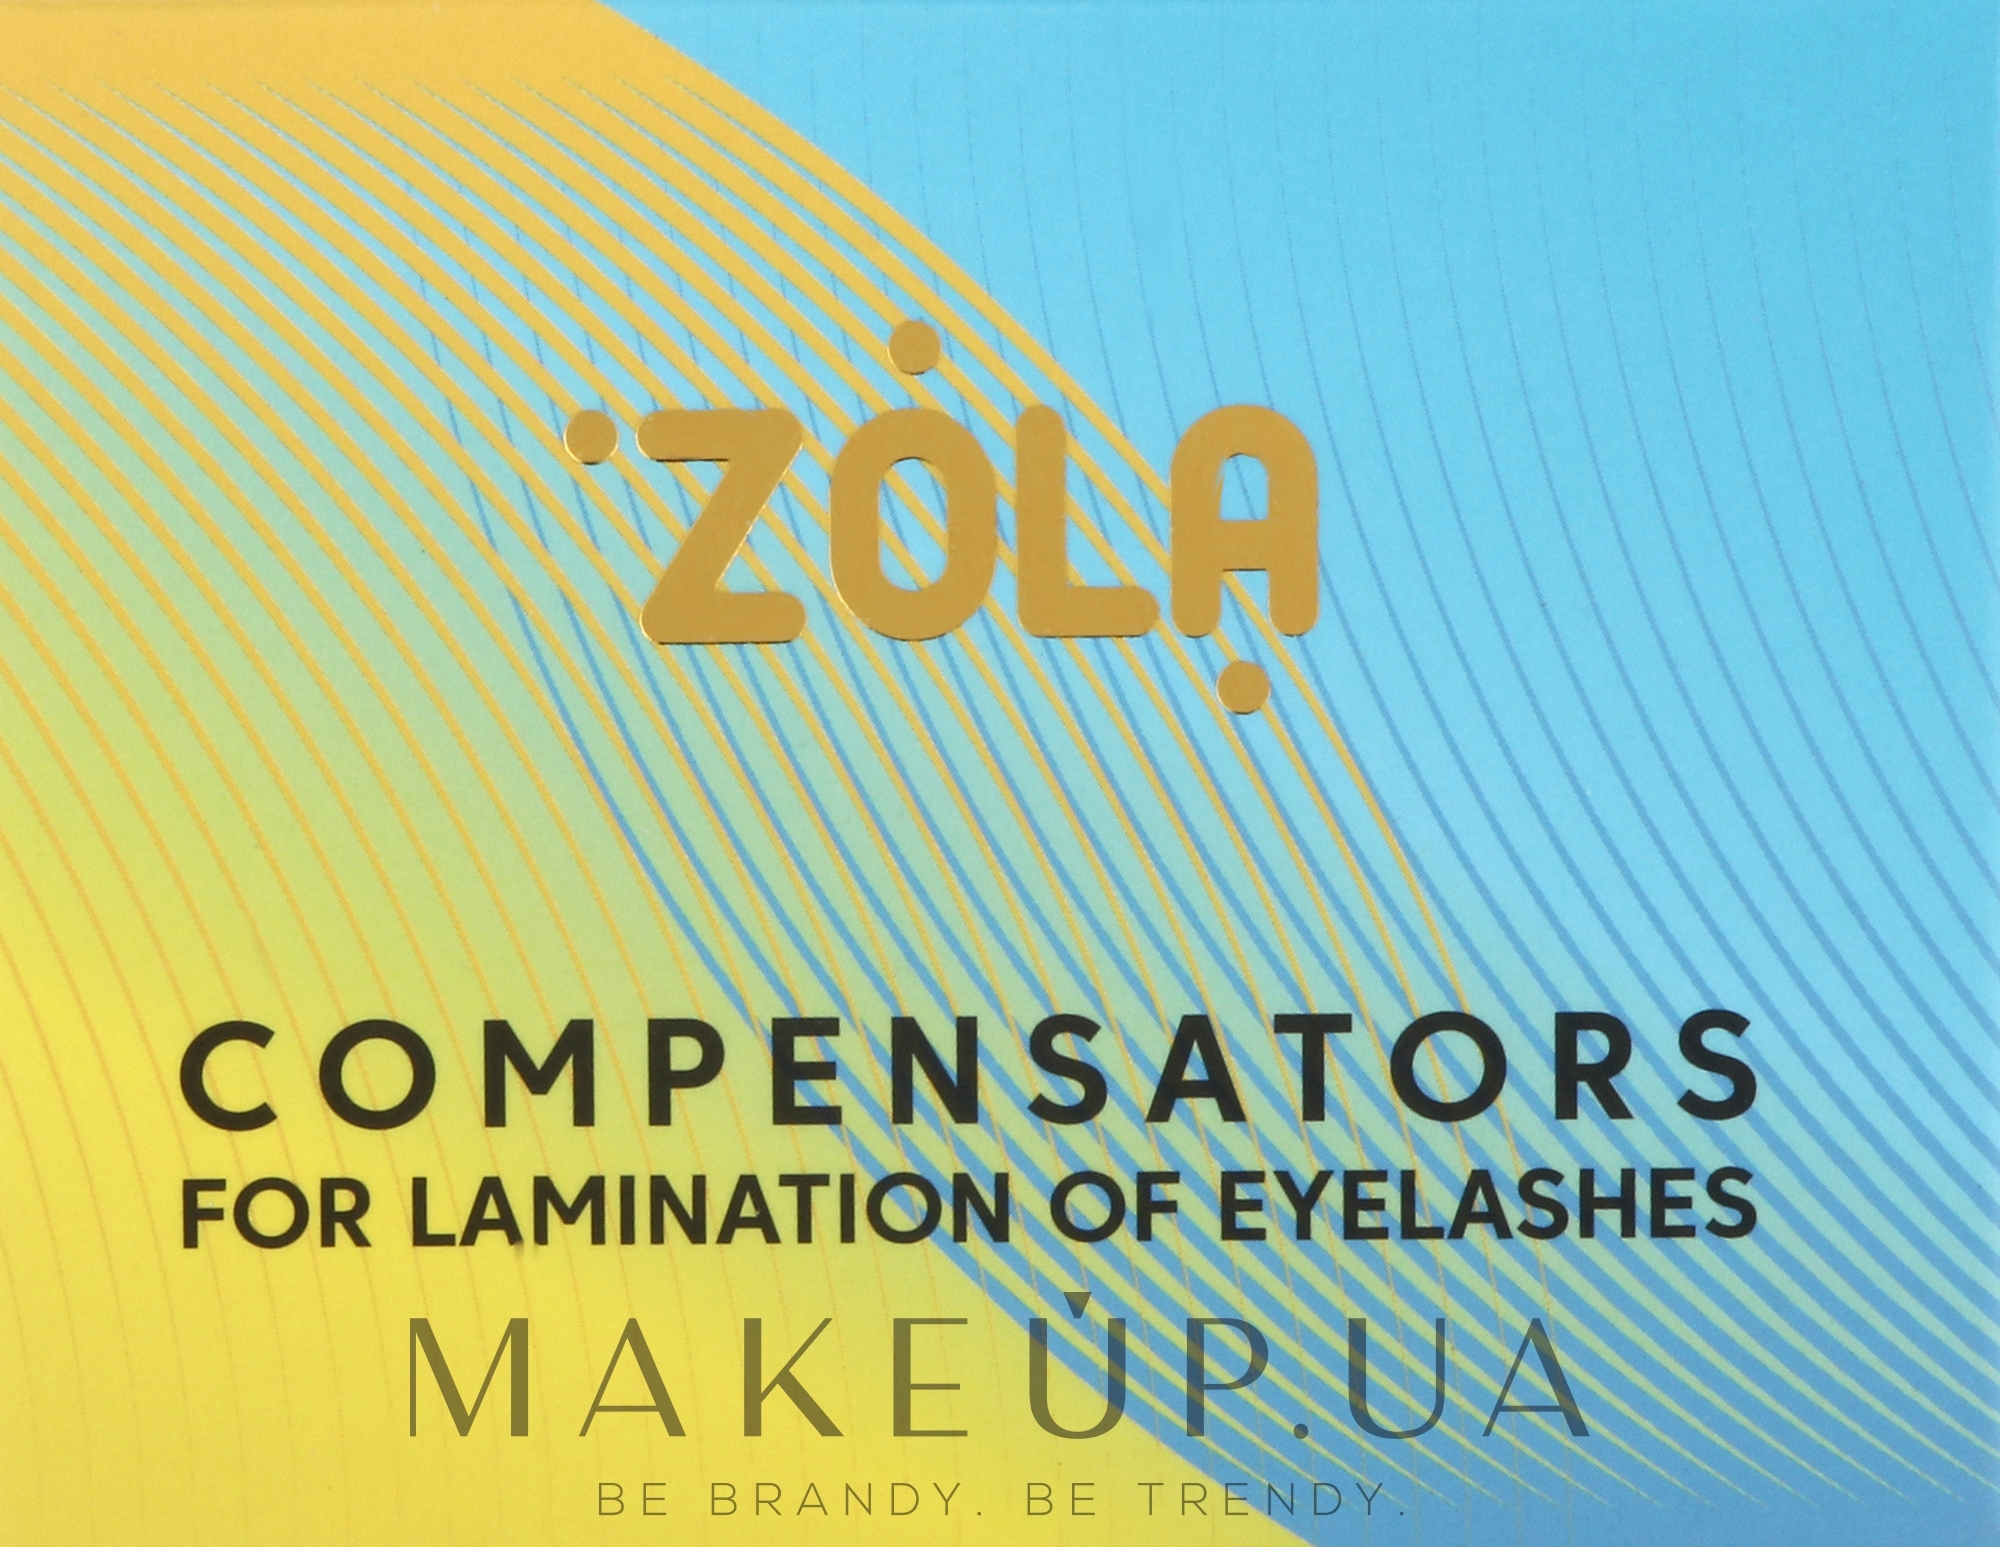 Компенсатори для ламінування вій, жовто-блакитні - Zola Compensators For Lamination of Eyelashes — фото 2шт